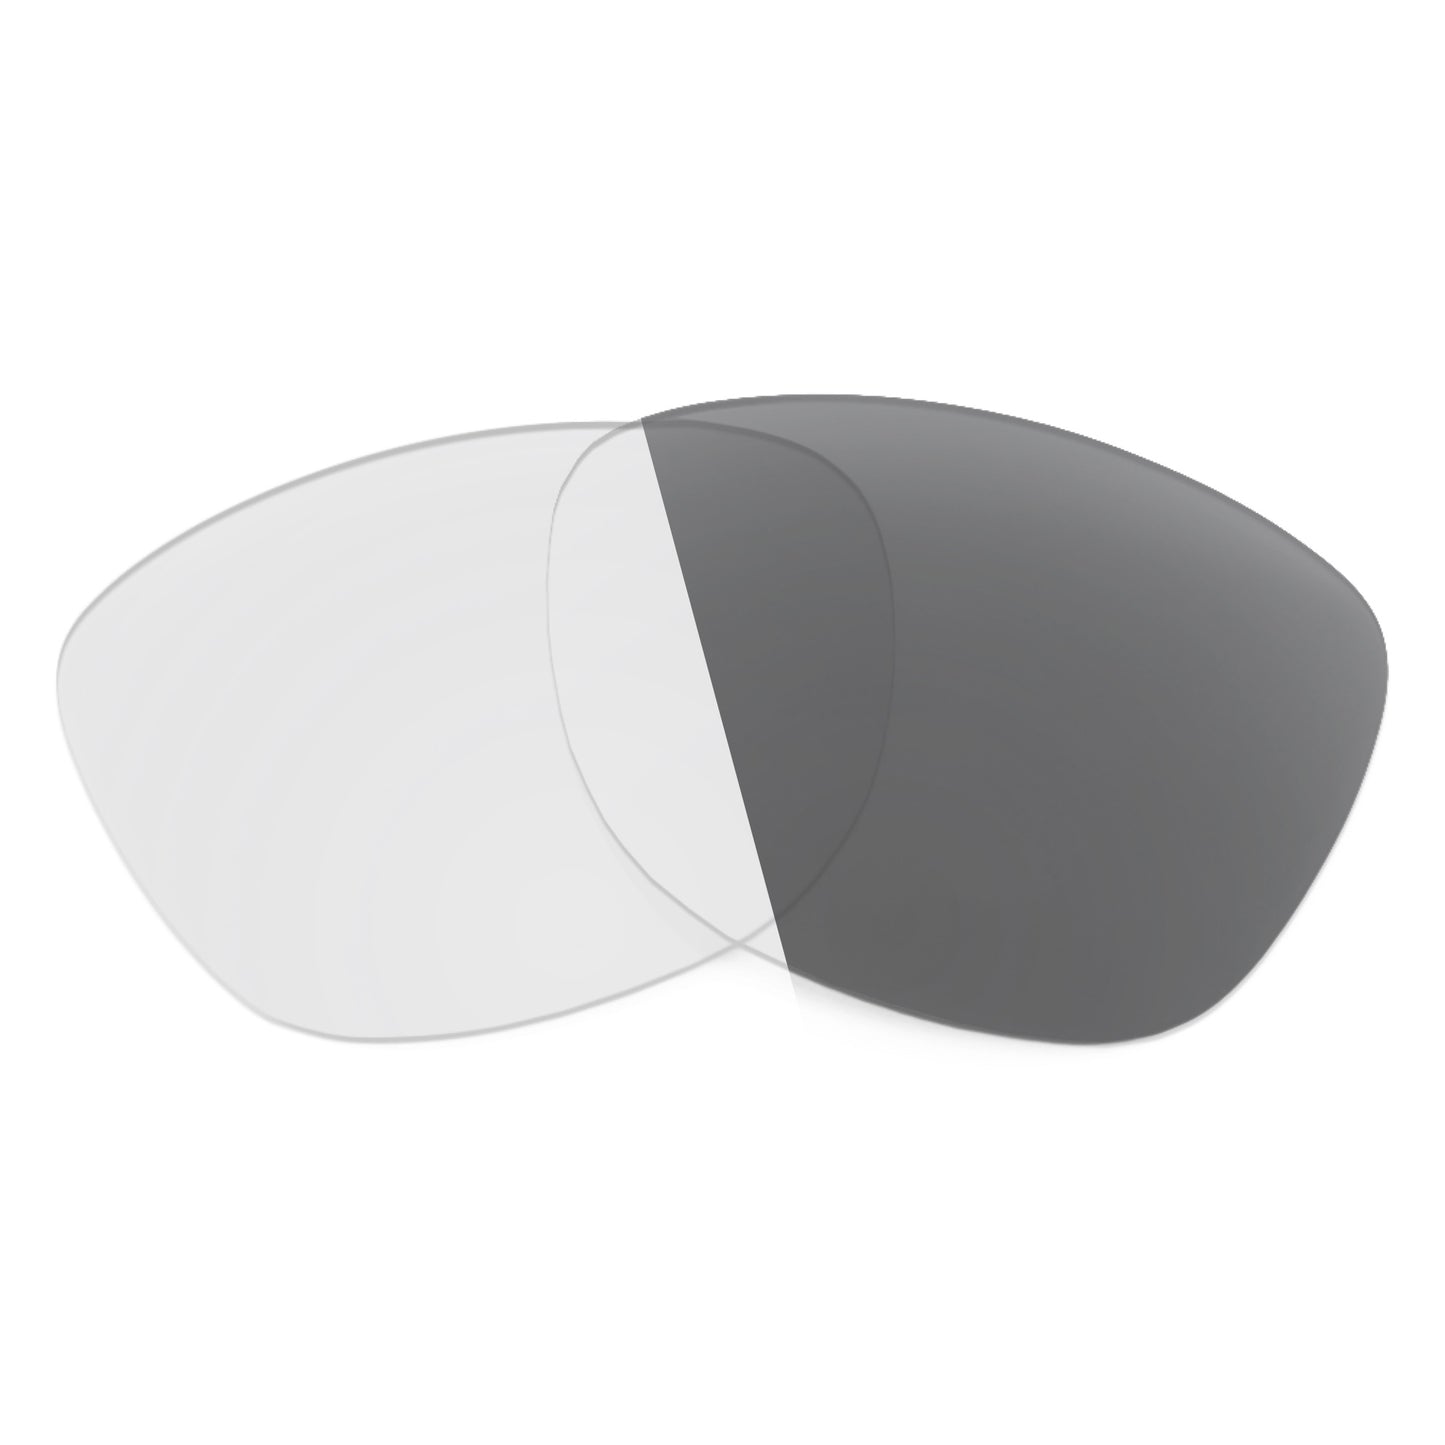 Revant replacement lenses for Arnette Dean AN4205 Non-Polarized Adapt Gray Photochromic